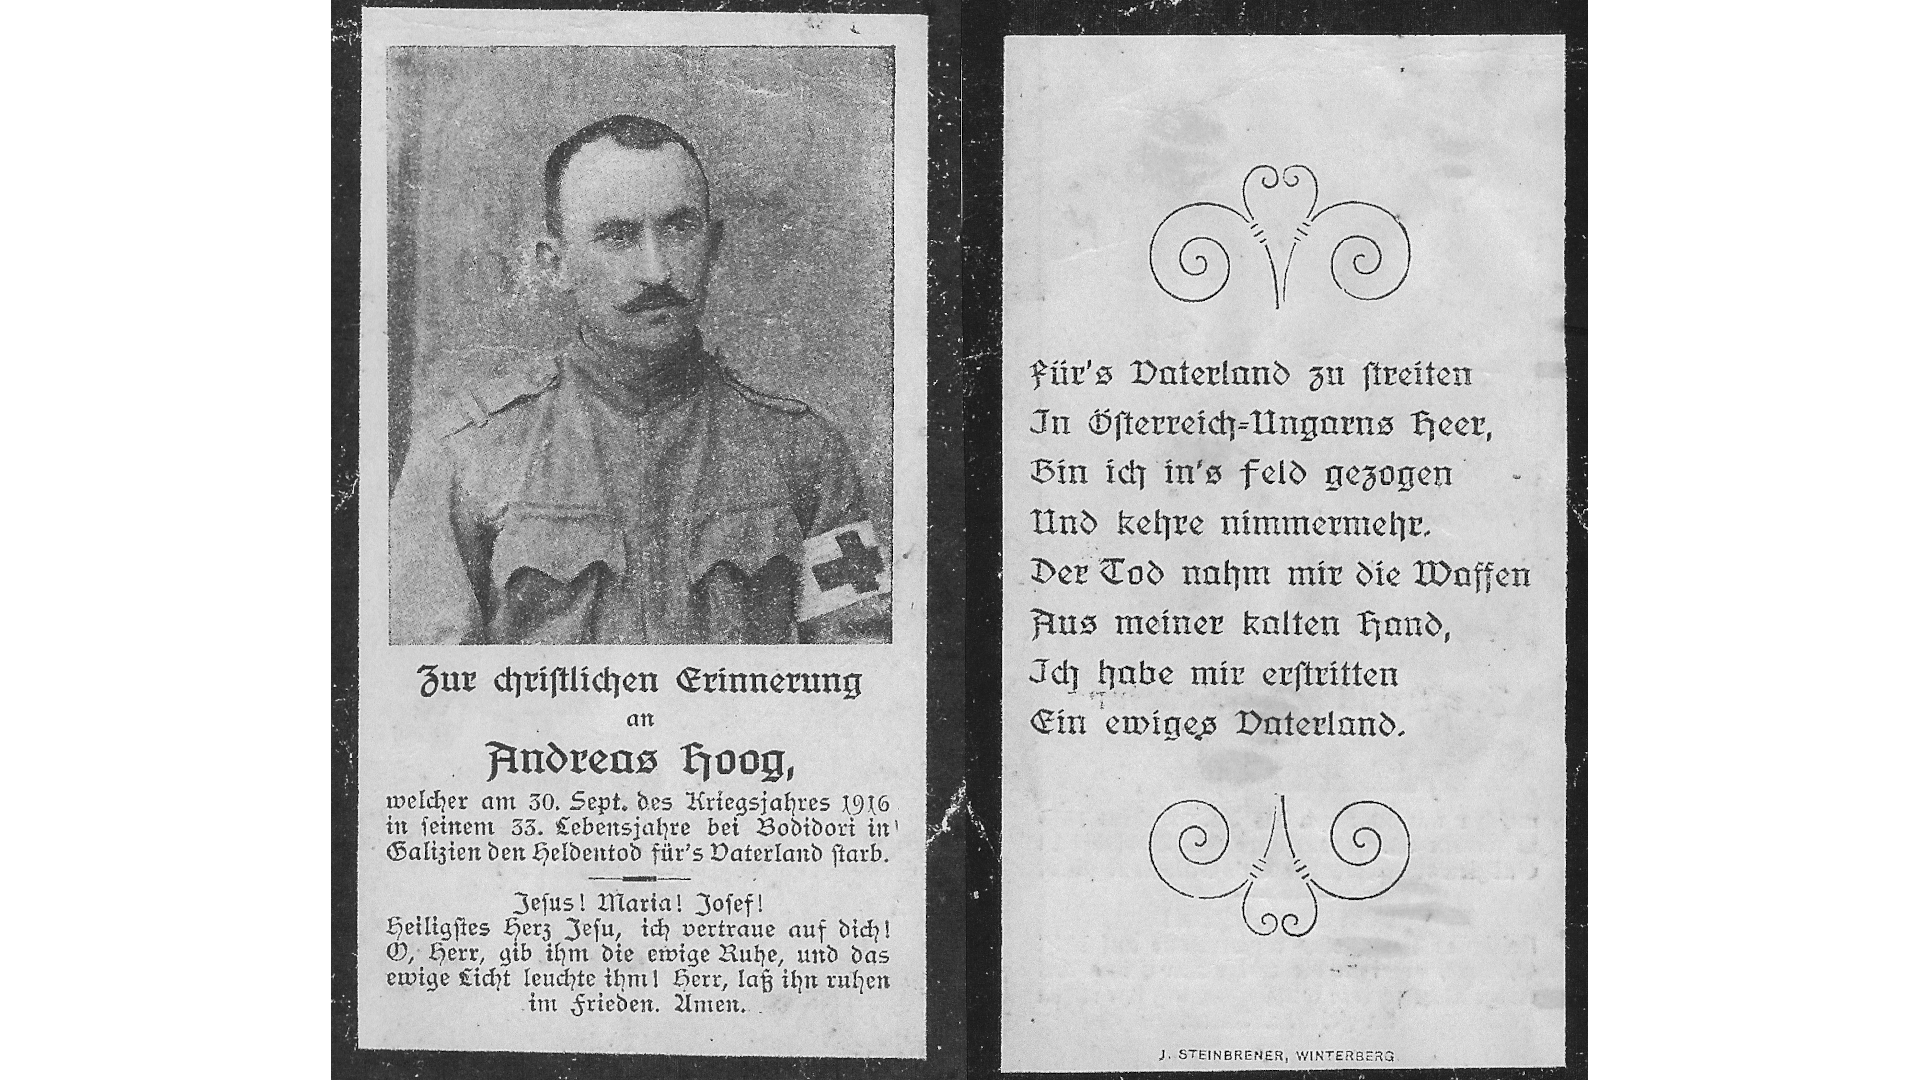 Beispiel eines Christlichen Andenkens an einen Gefallenen des Ersten Weltkrieges. Foto: Archiv Freundeskreis Filipowa